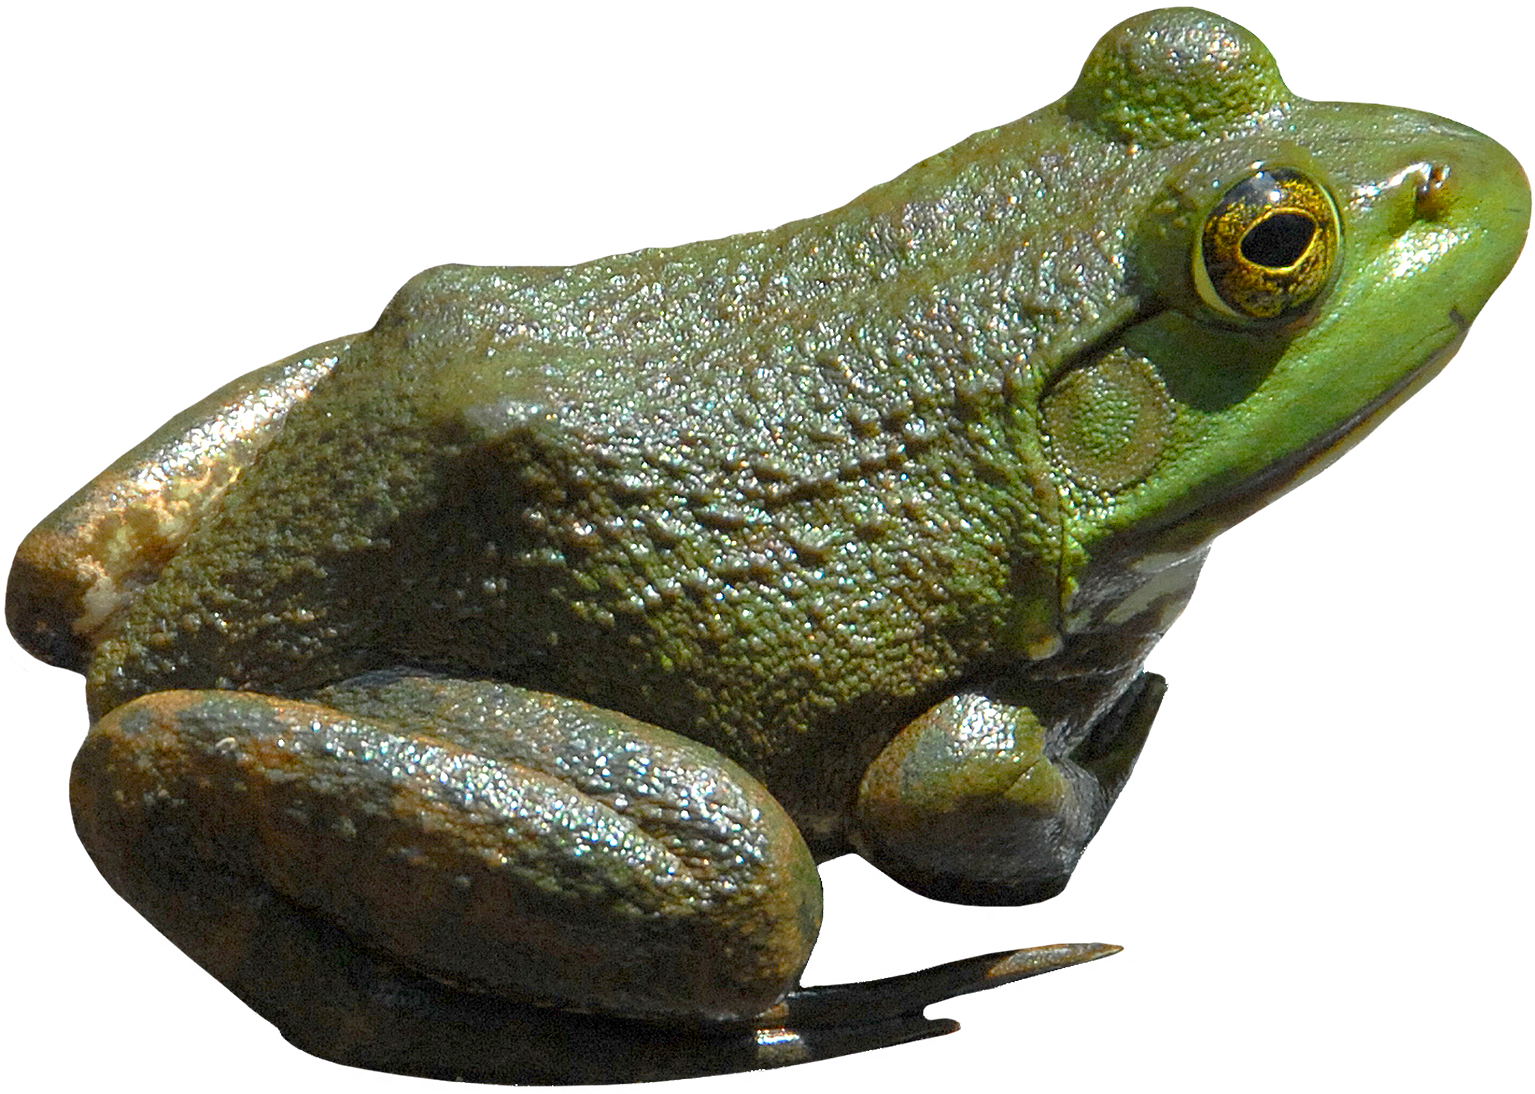 Frog Transparent PNG